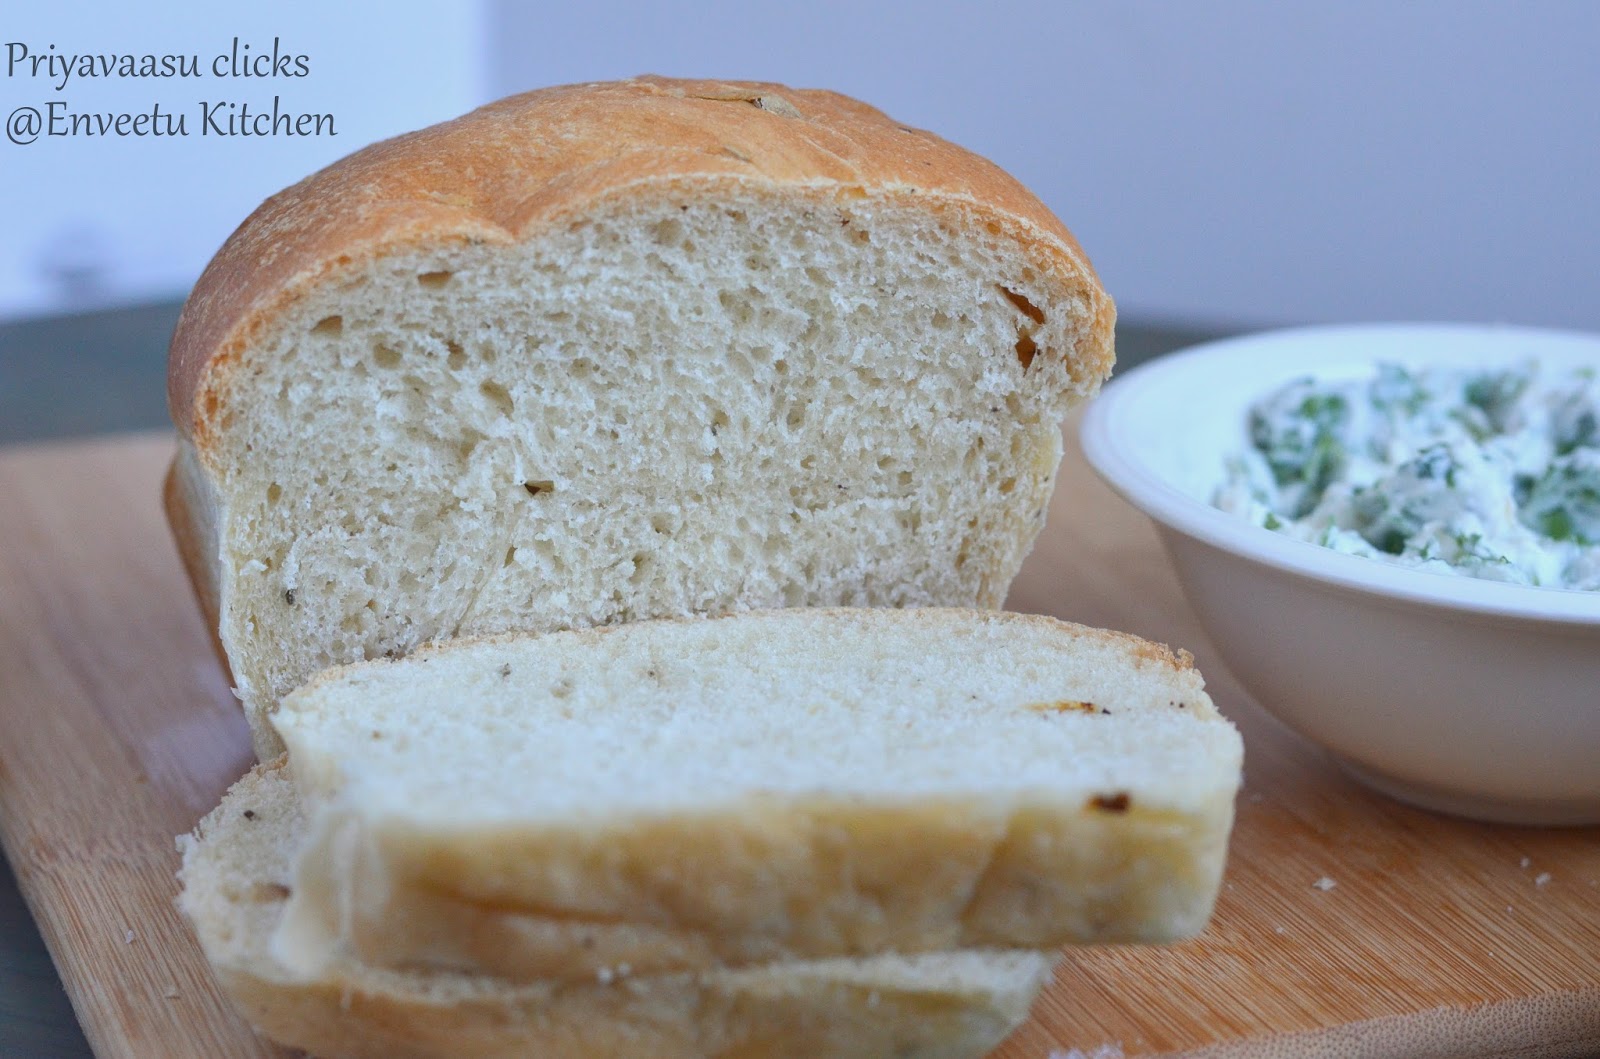 Italian Panmarino bread